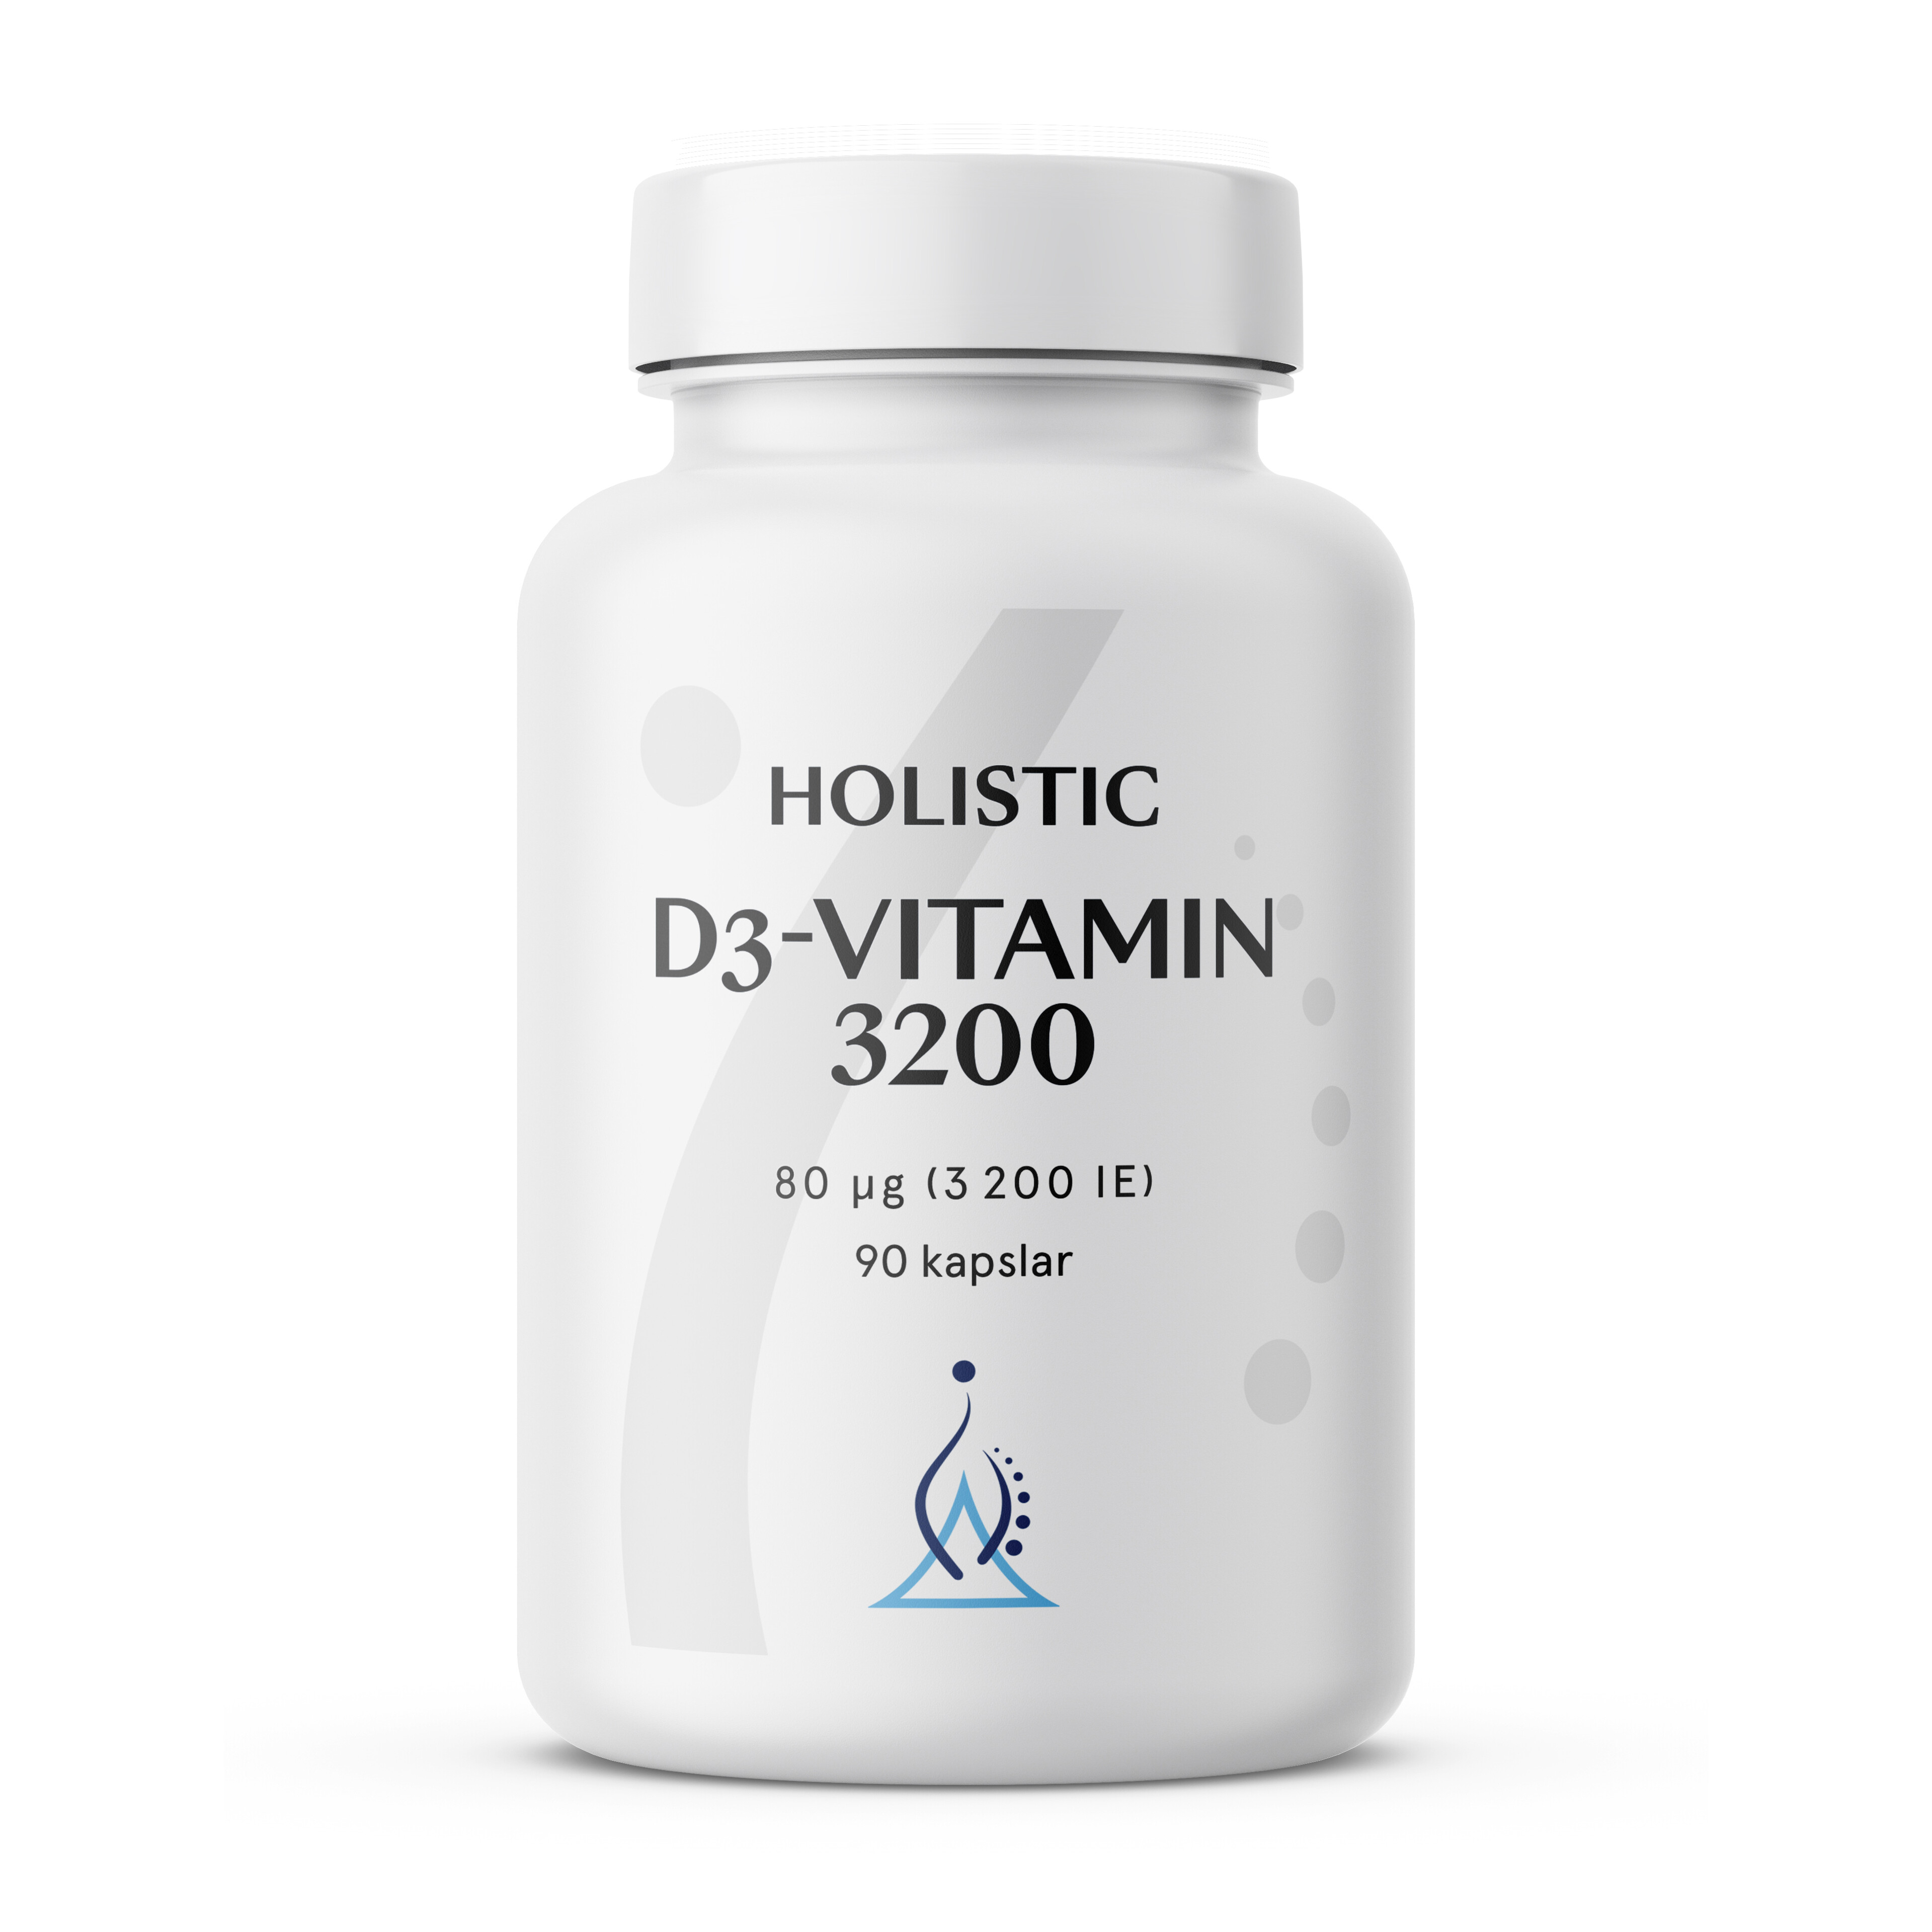 D3-vitamin 3200, 90 kapslar